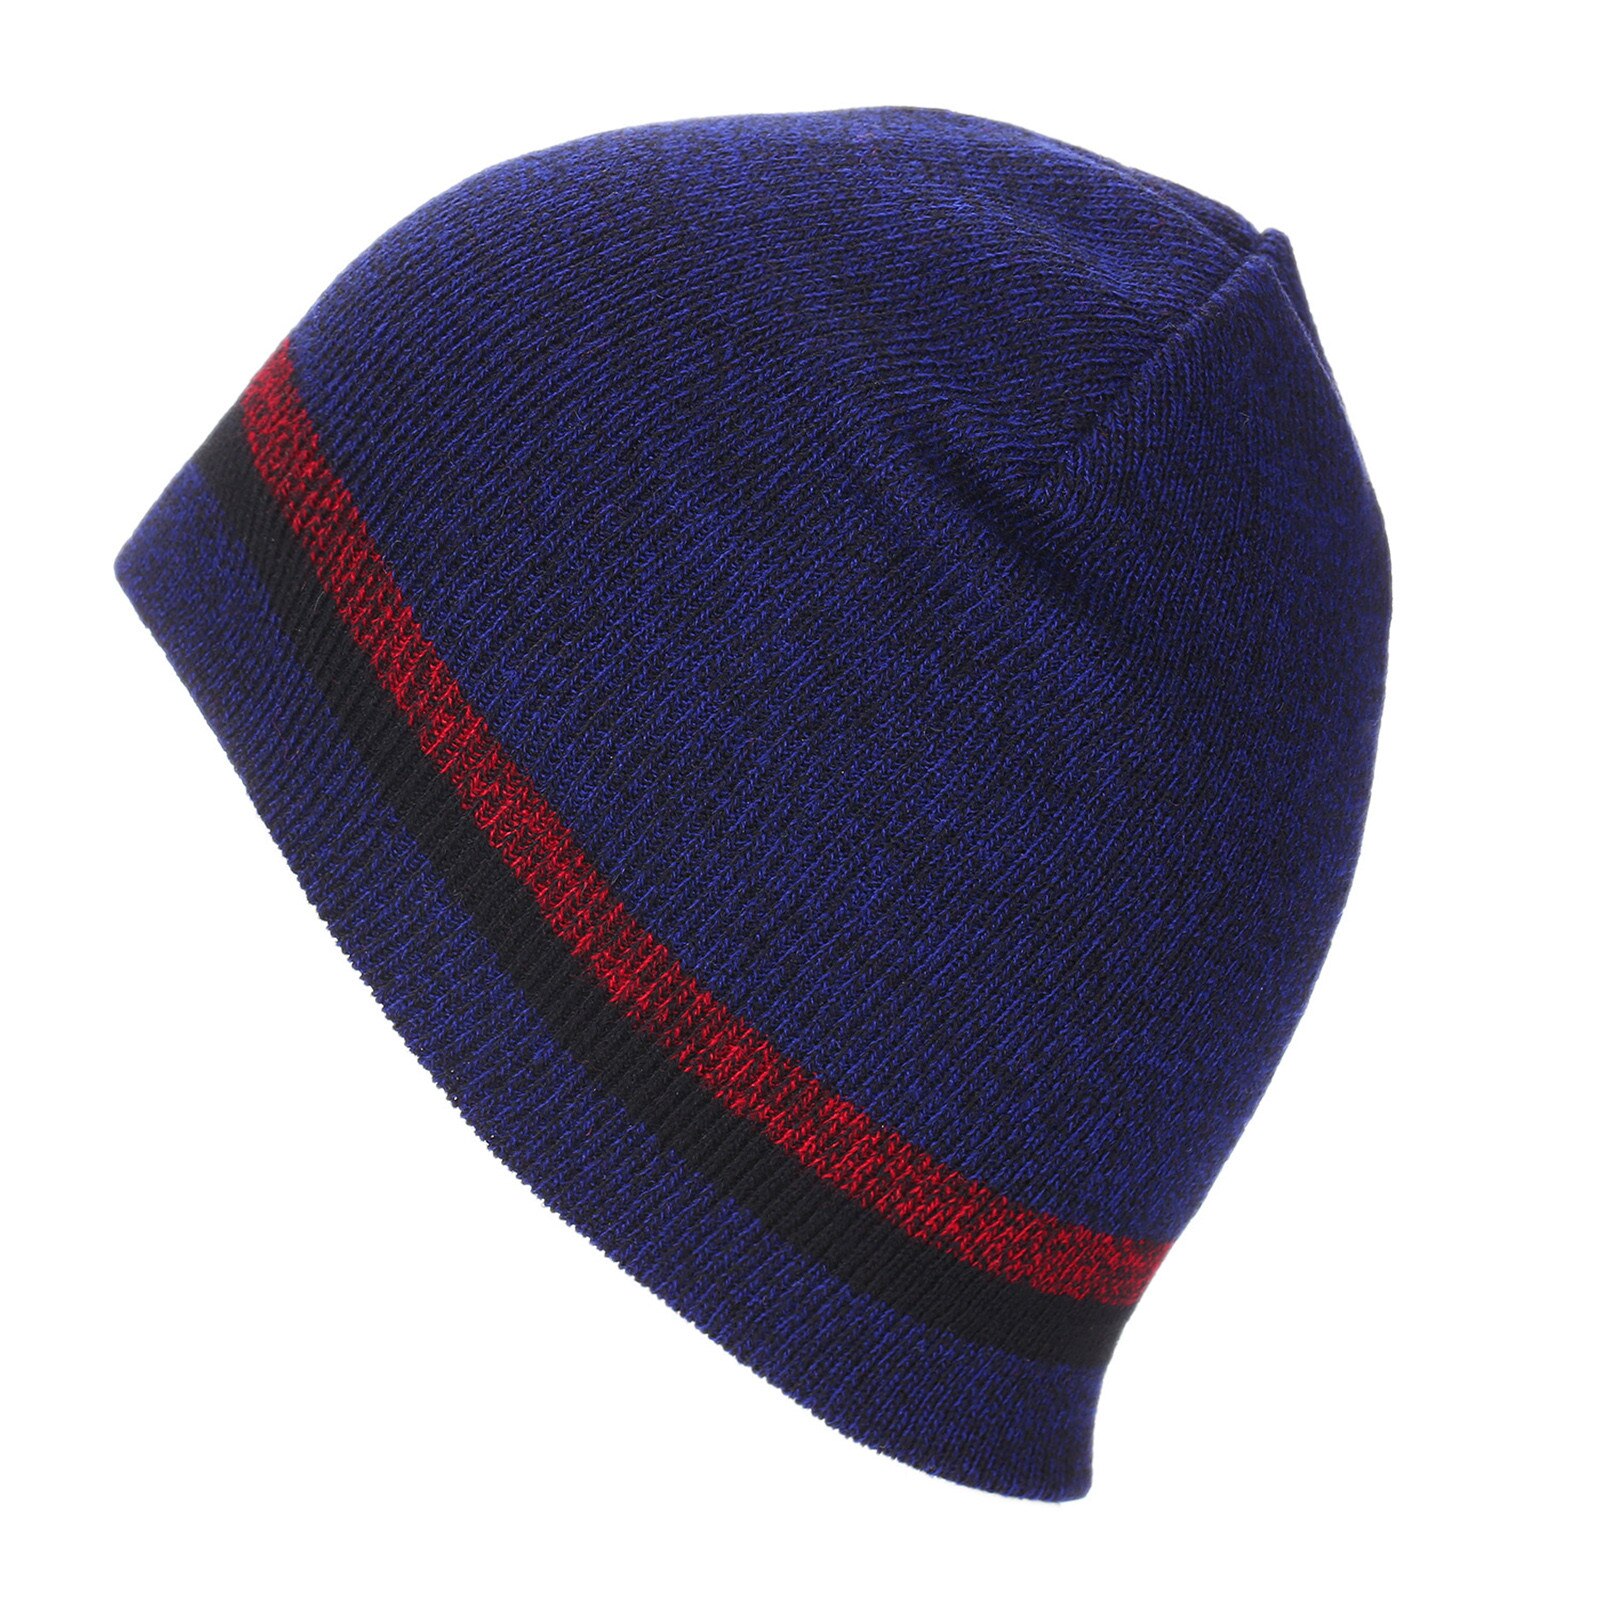 E cappello invernale alla moda cappello di lana lavorato a maglia paraorecchie spesse sci all'aperto ciclismo cappello caldo dolce E adorabile, caldo confortevole: RD